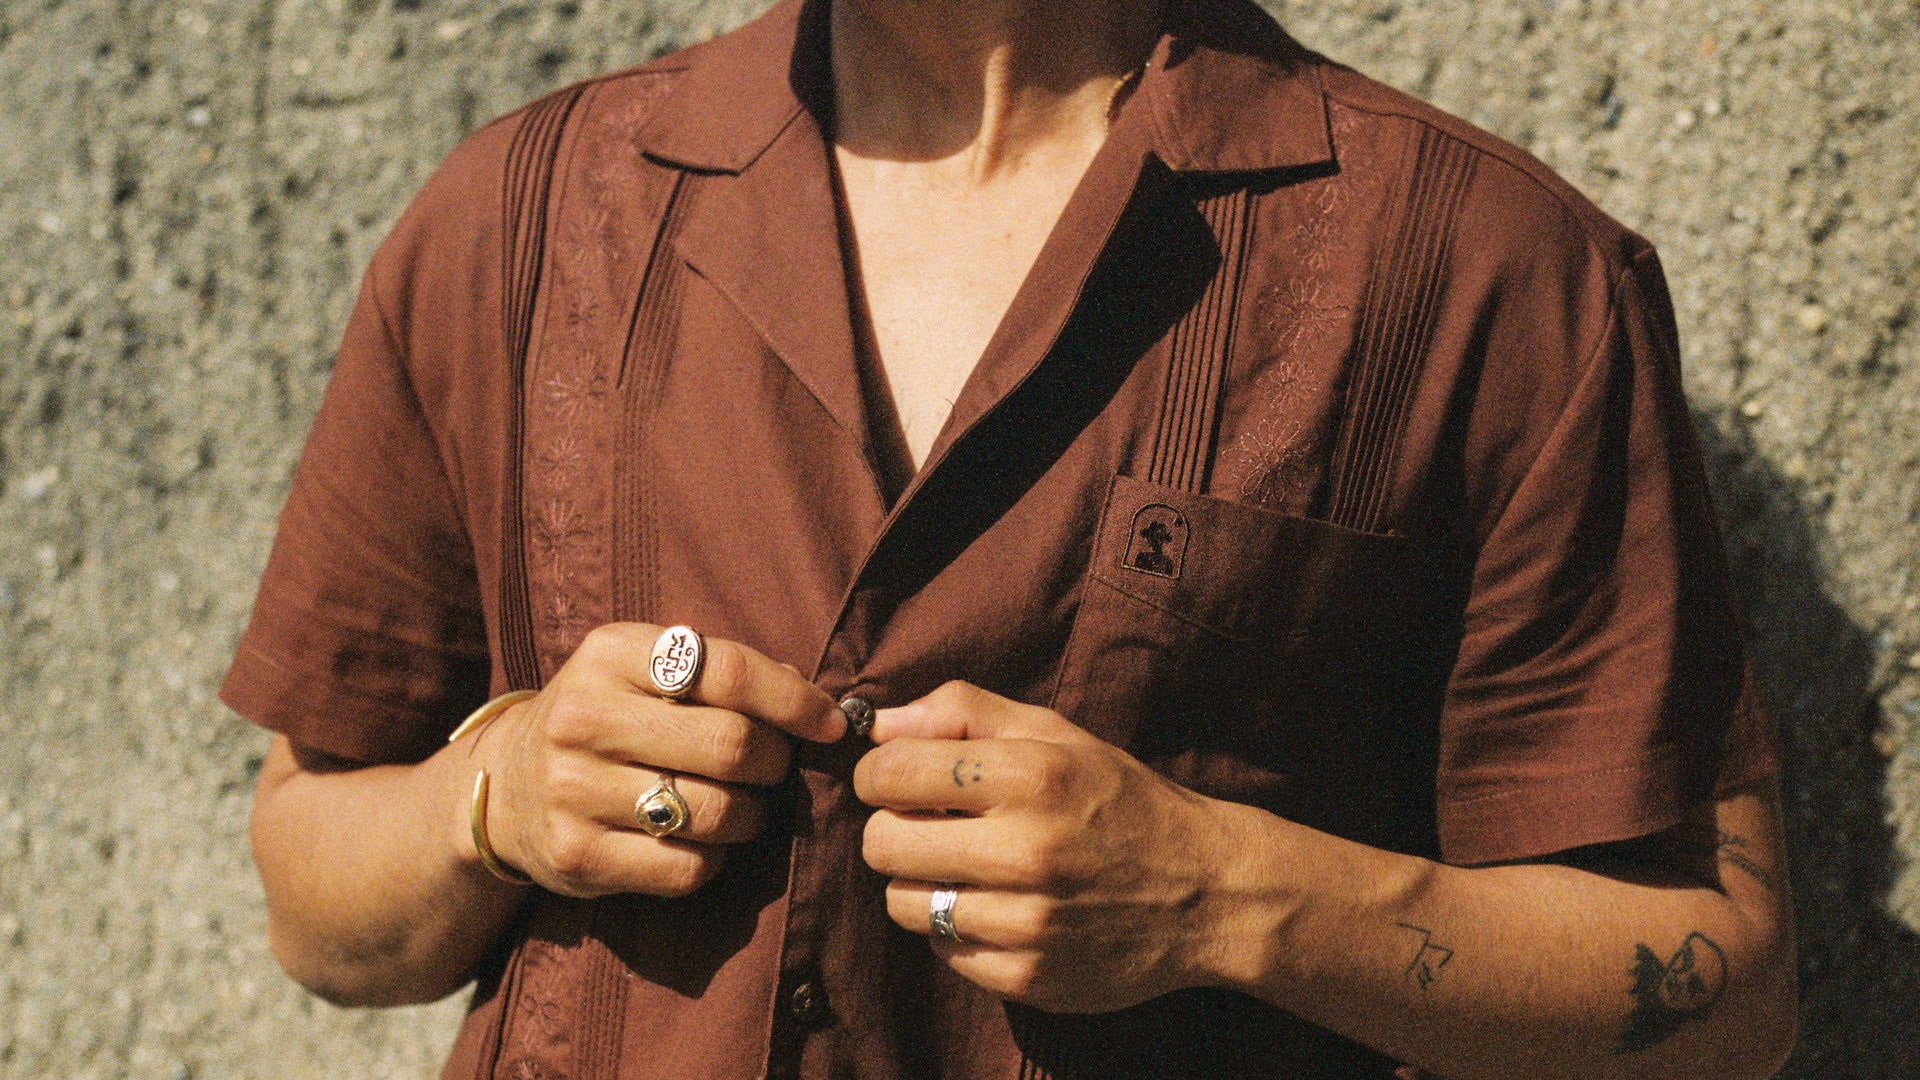 Man wearing dandy del brown shirt